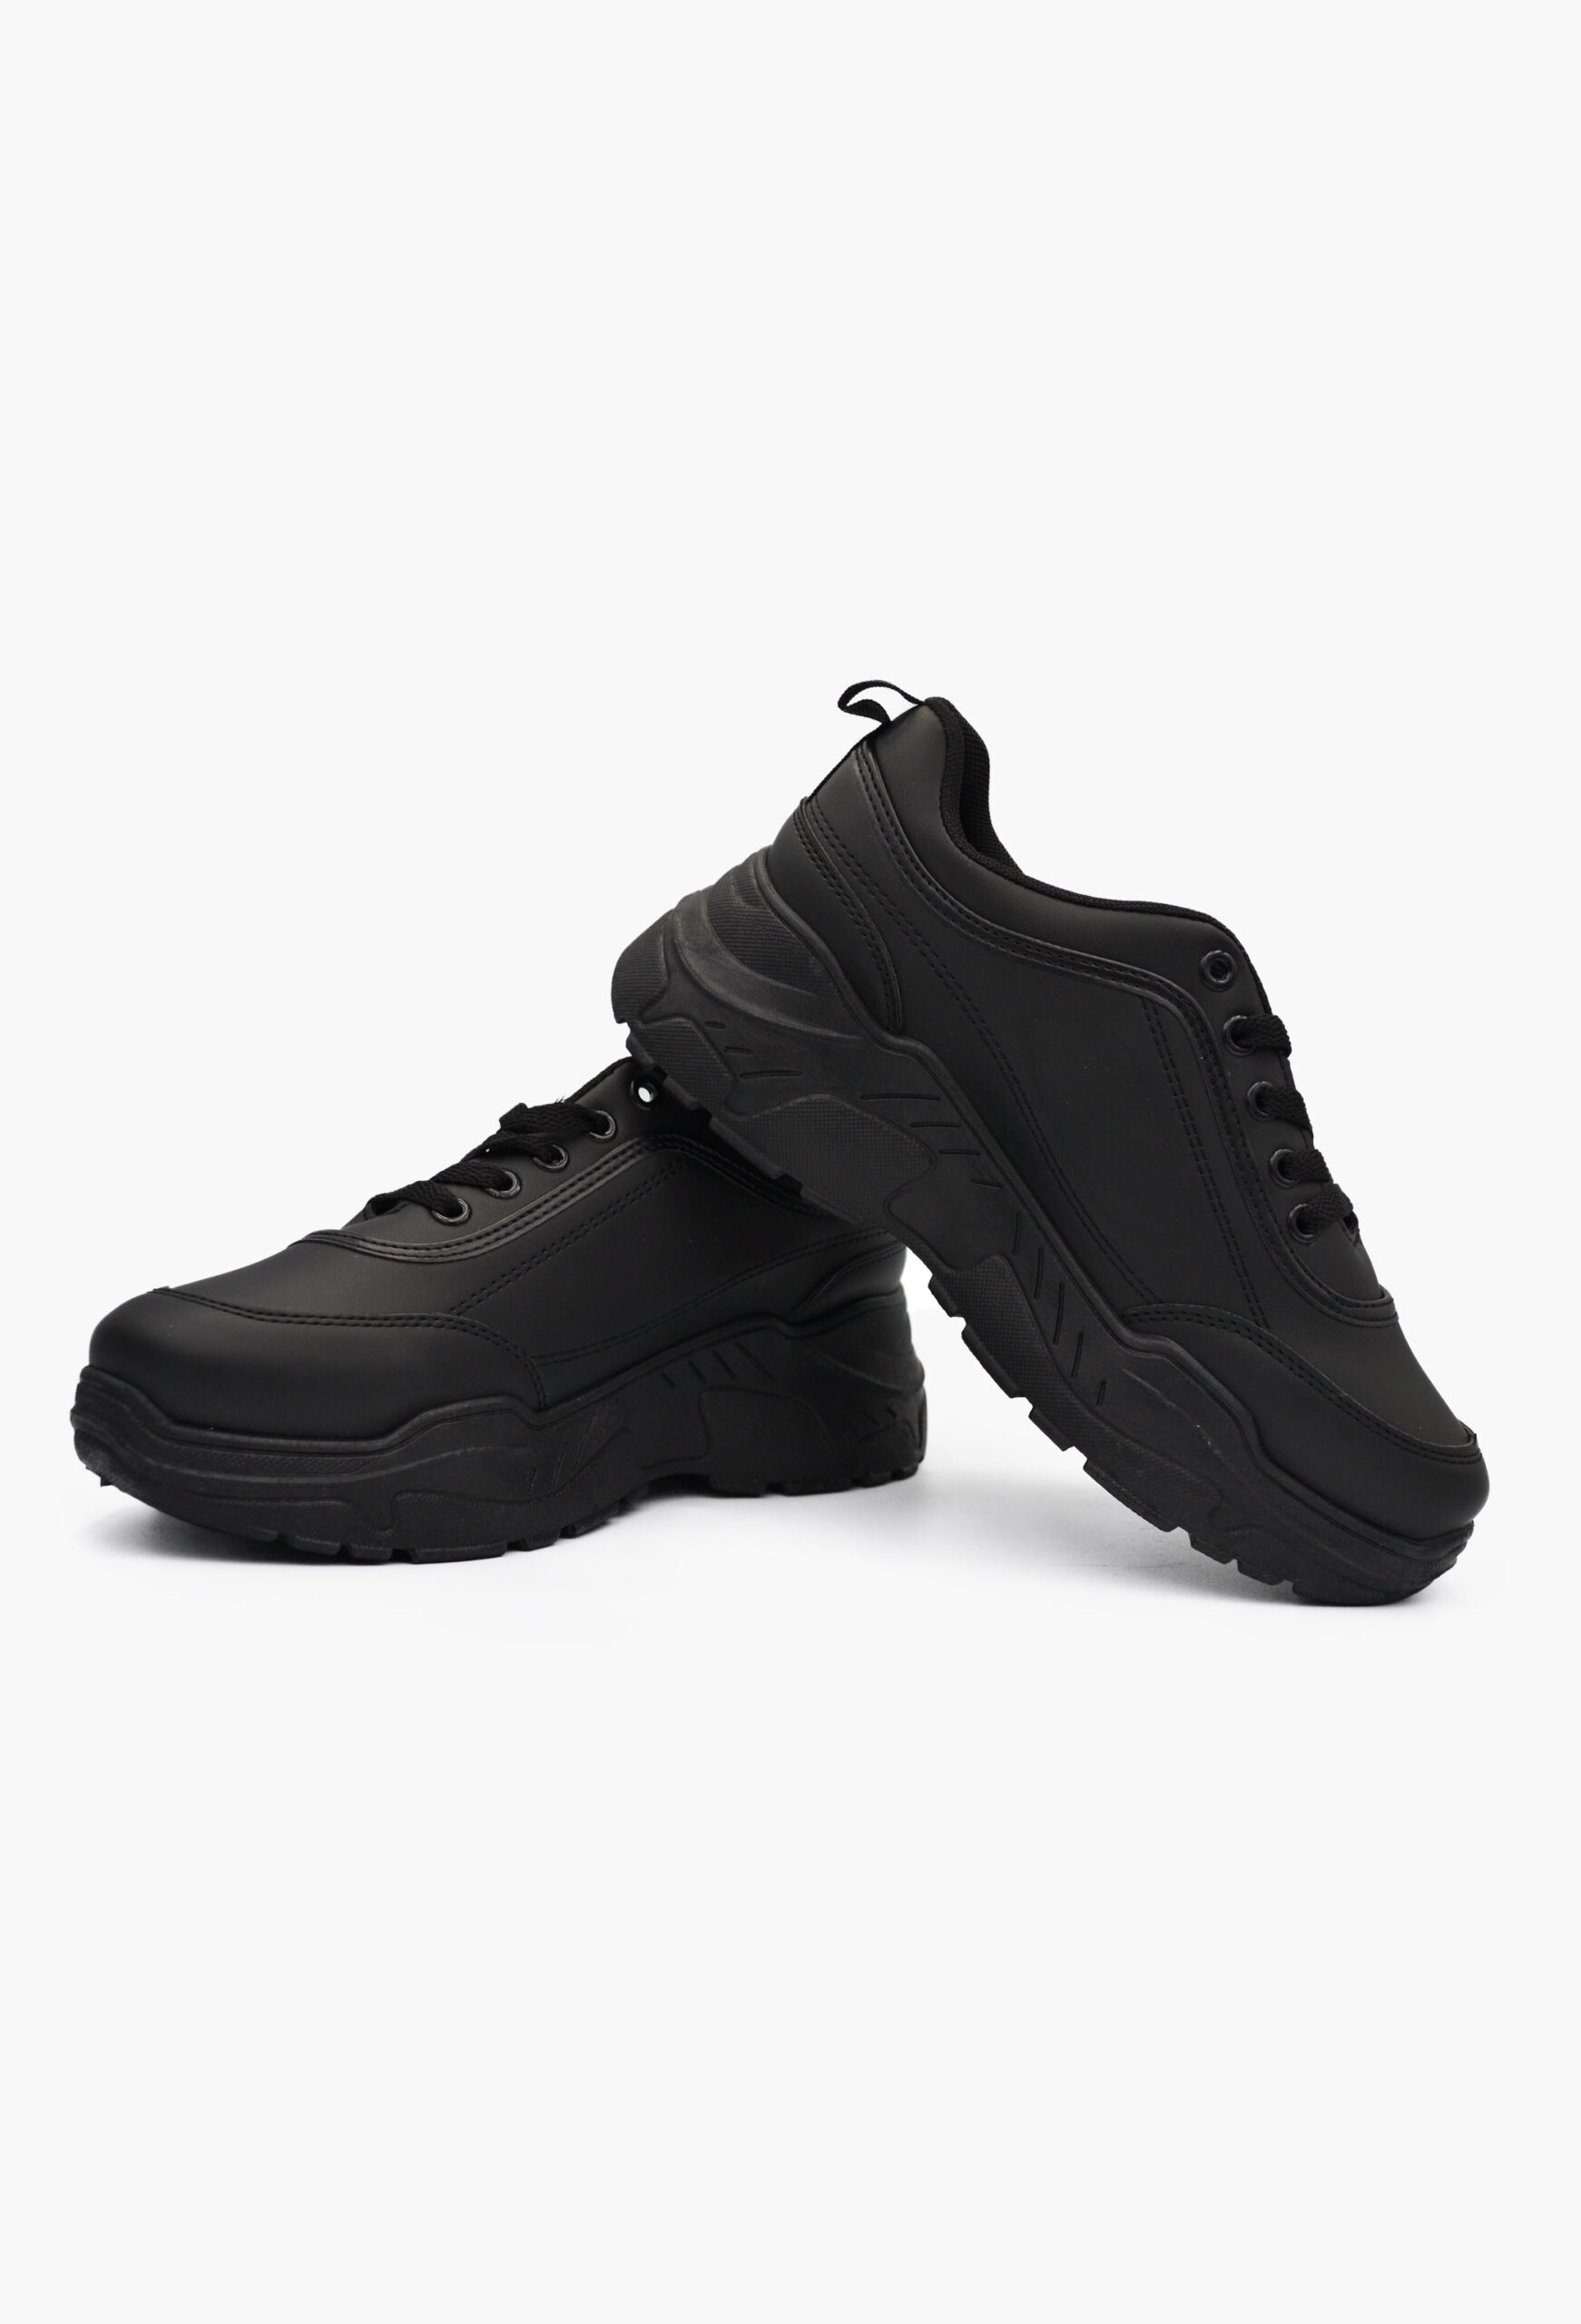 Γυναικεία Chunky Sneakers Μαύρο / BY0381-black Γυναικεία Αθλητικά και Sneakers joya.gr